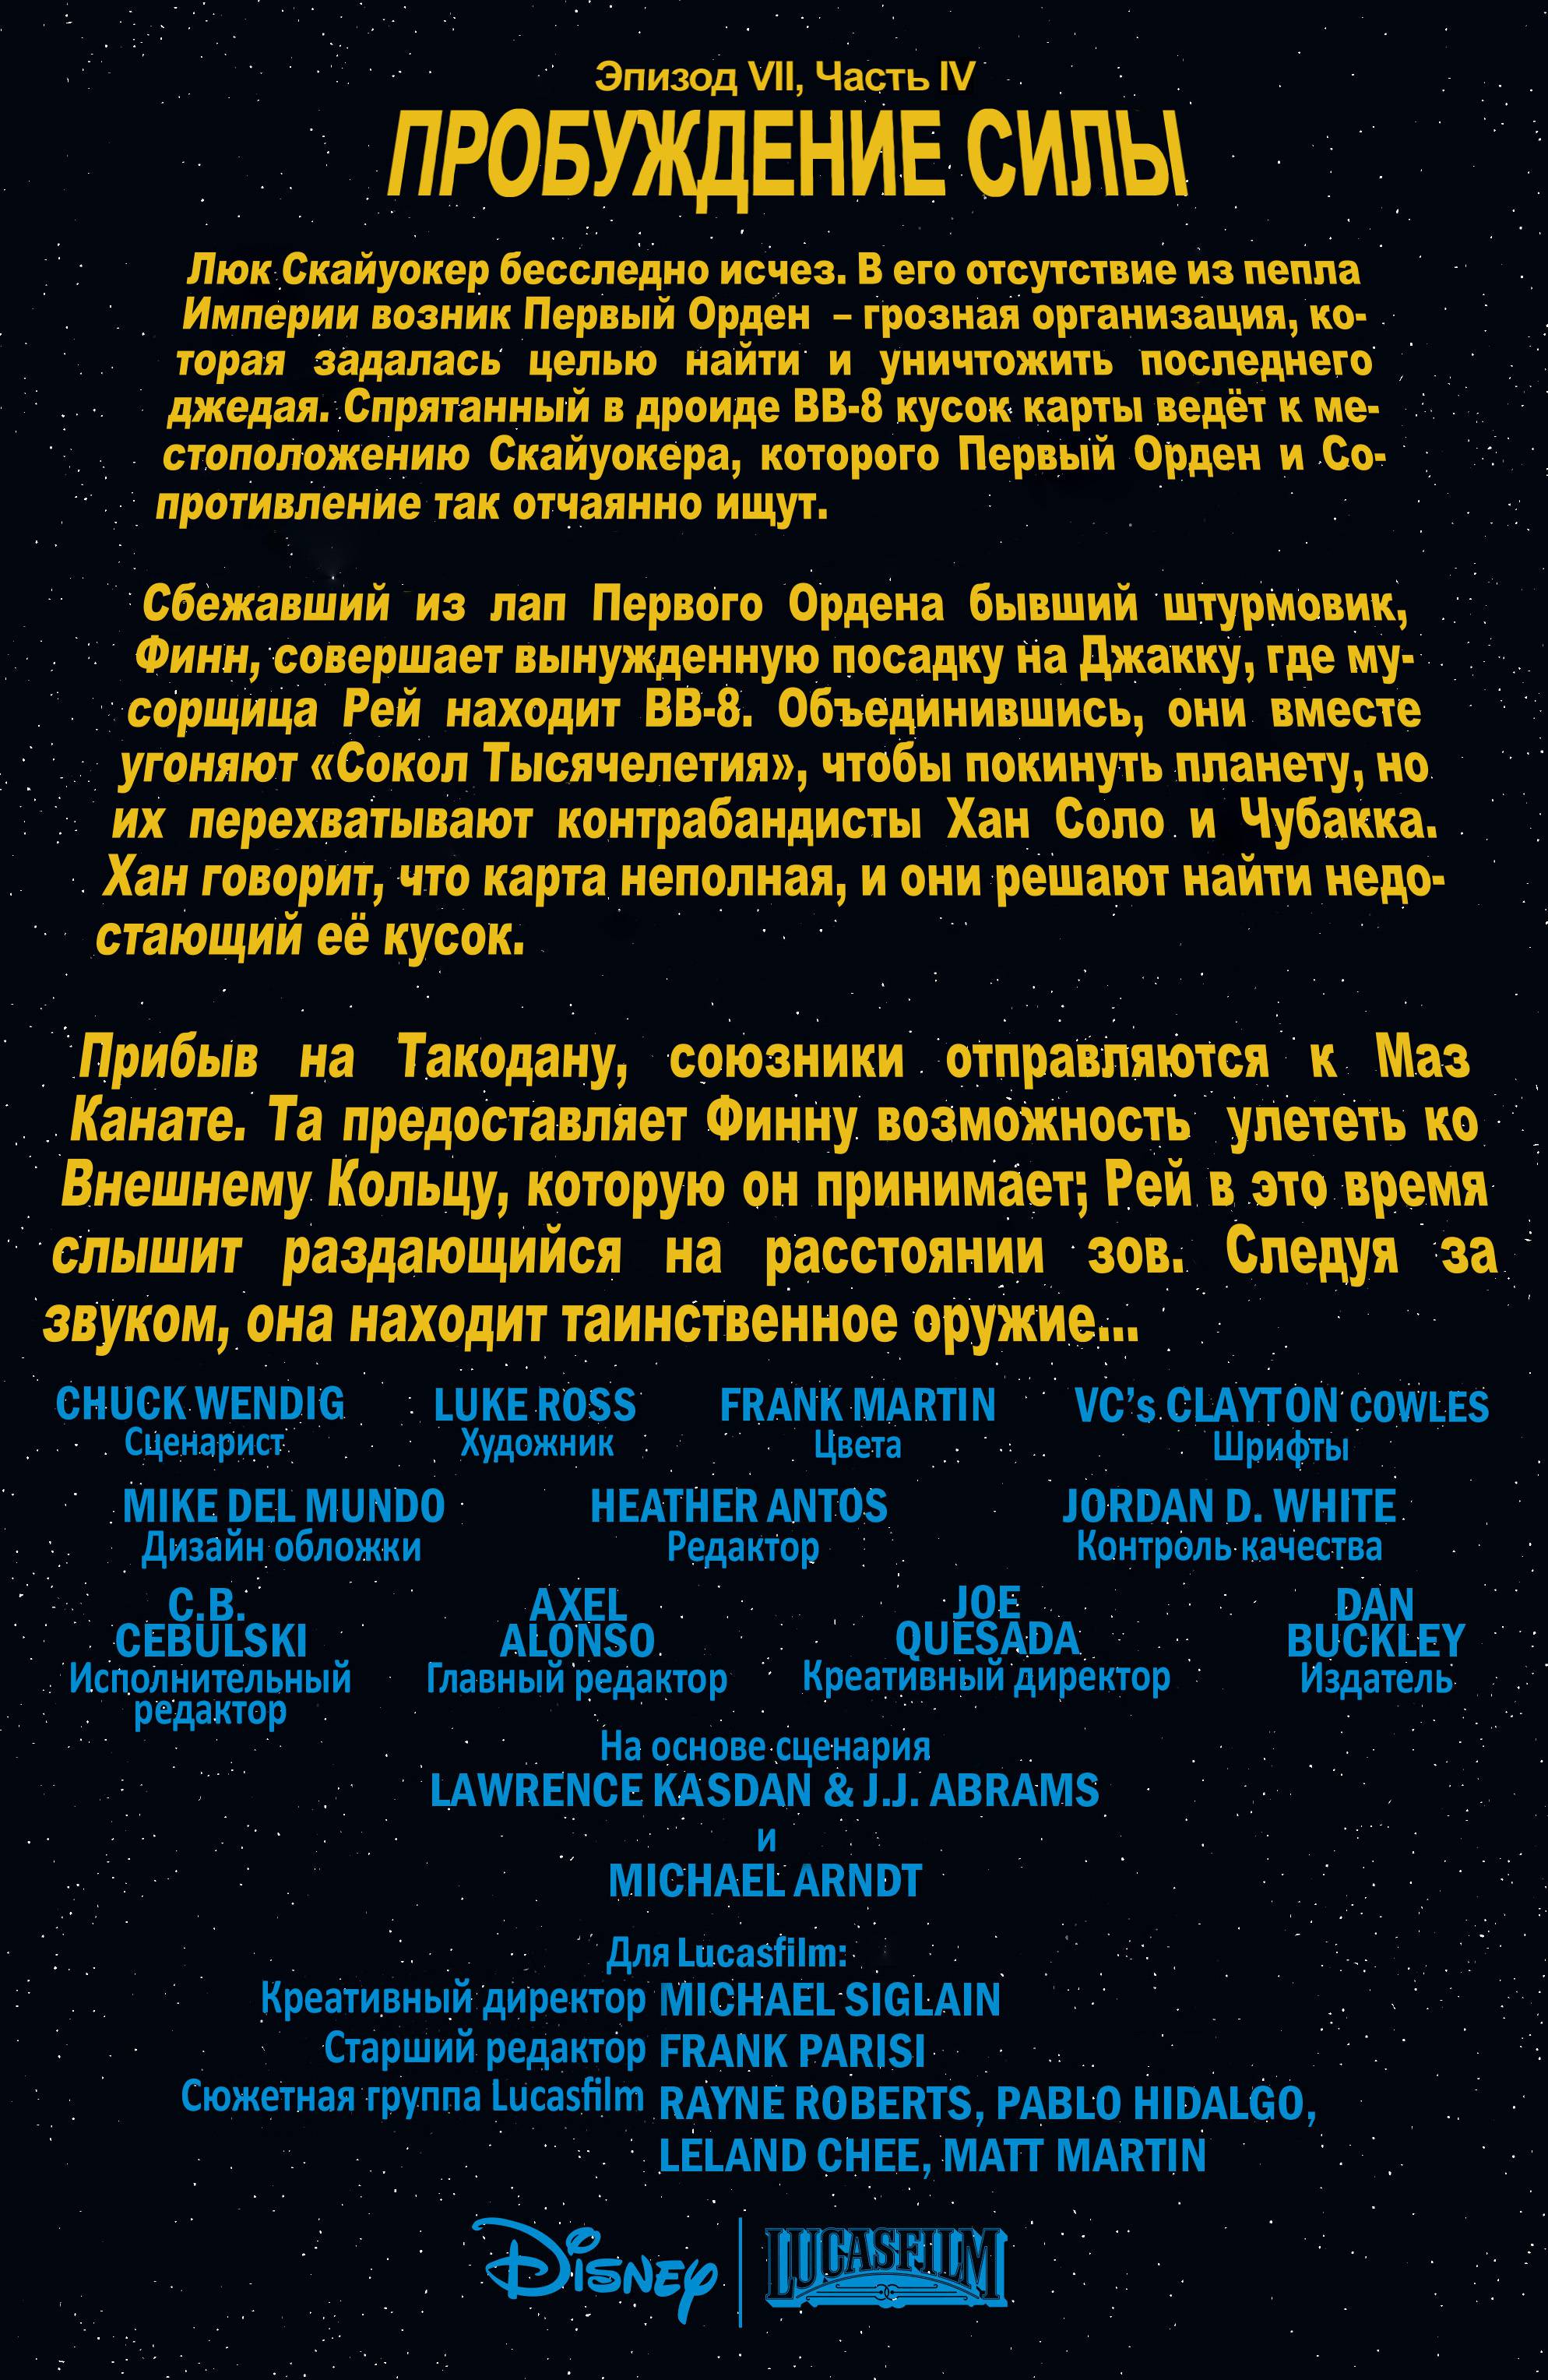 Звездные Войны: Пробуждение Силы. Адаптация Фильма №4 онлайн